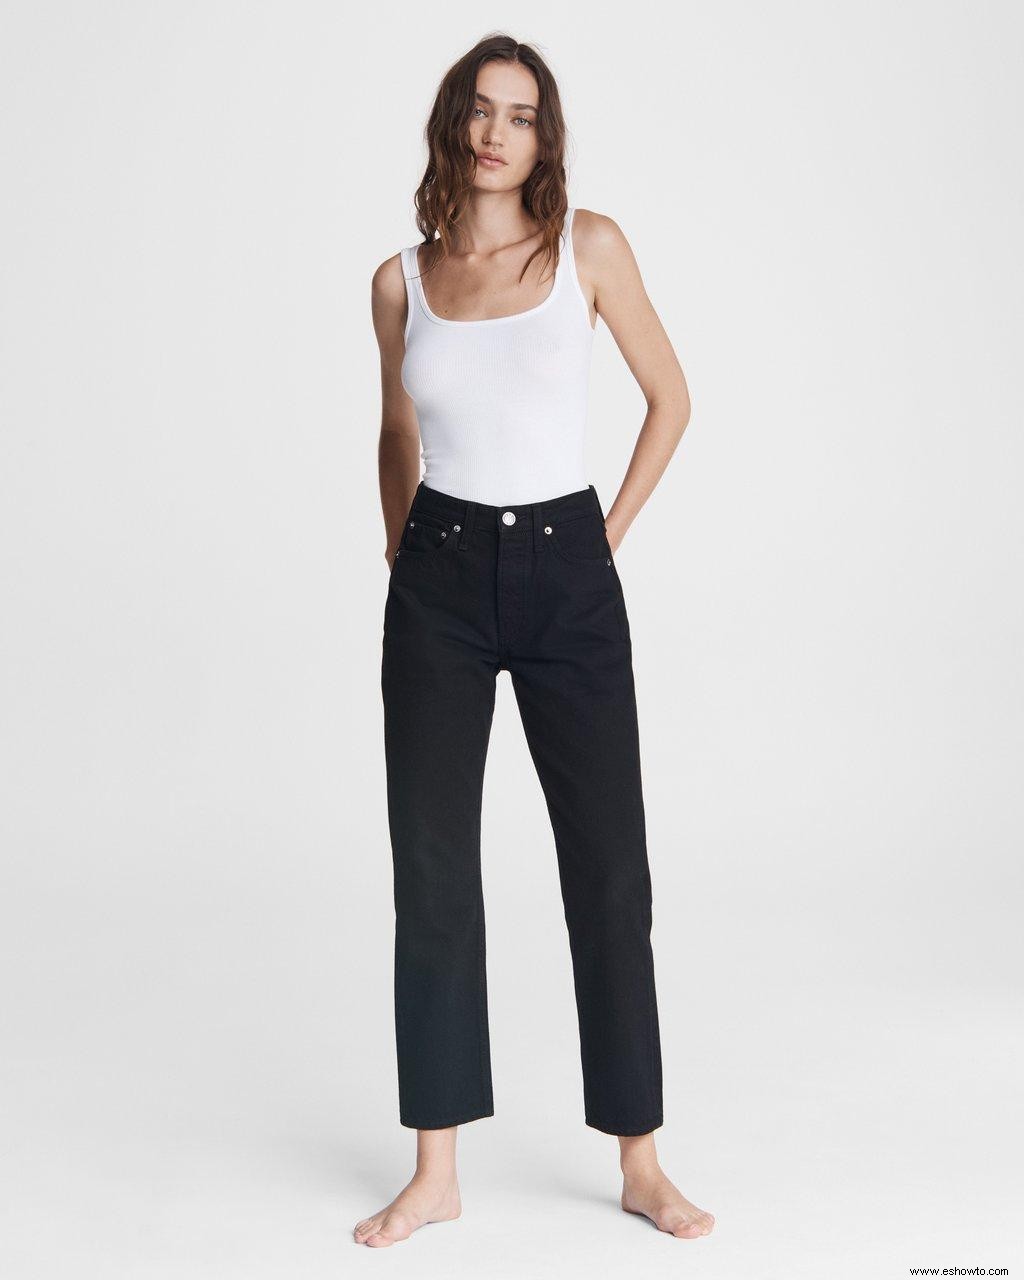 Encontramos los 12 pares de jeans más cómodos para cada mujer 